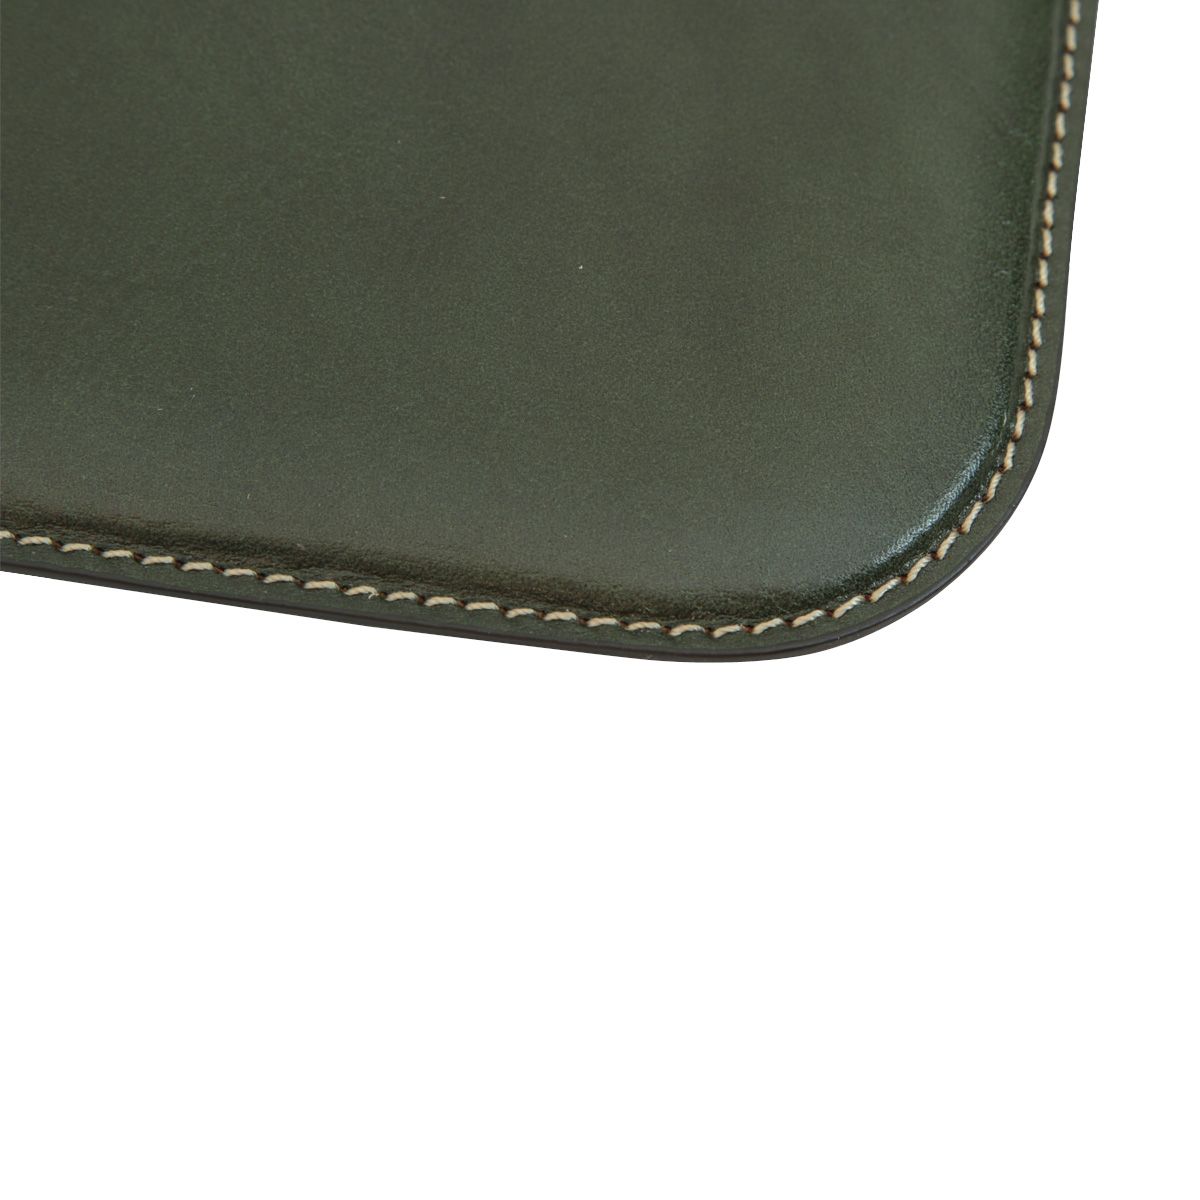 Leather Desk pad - green | 760089VE US | Old Angler Firenze